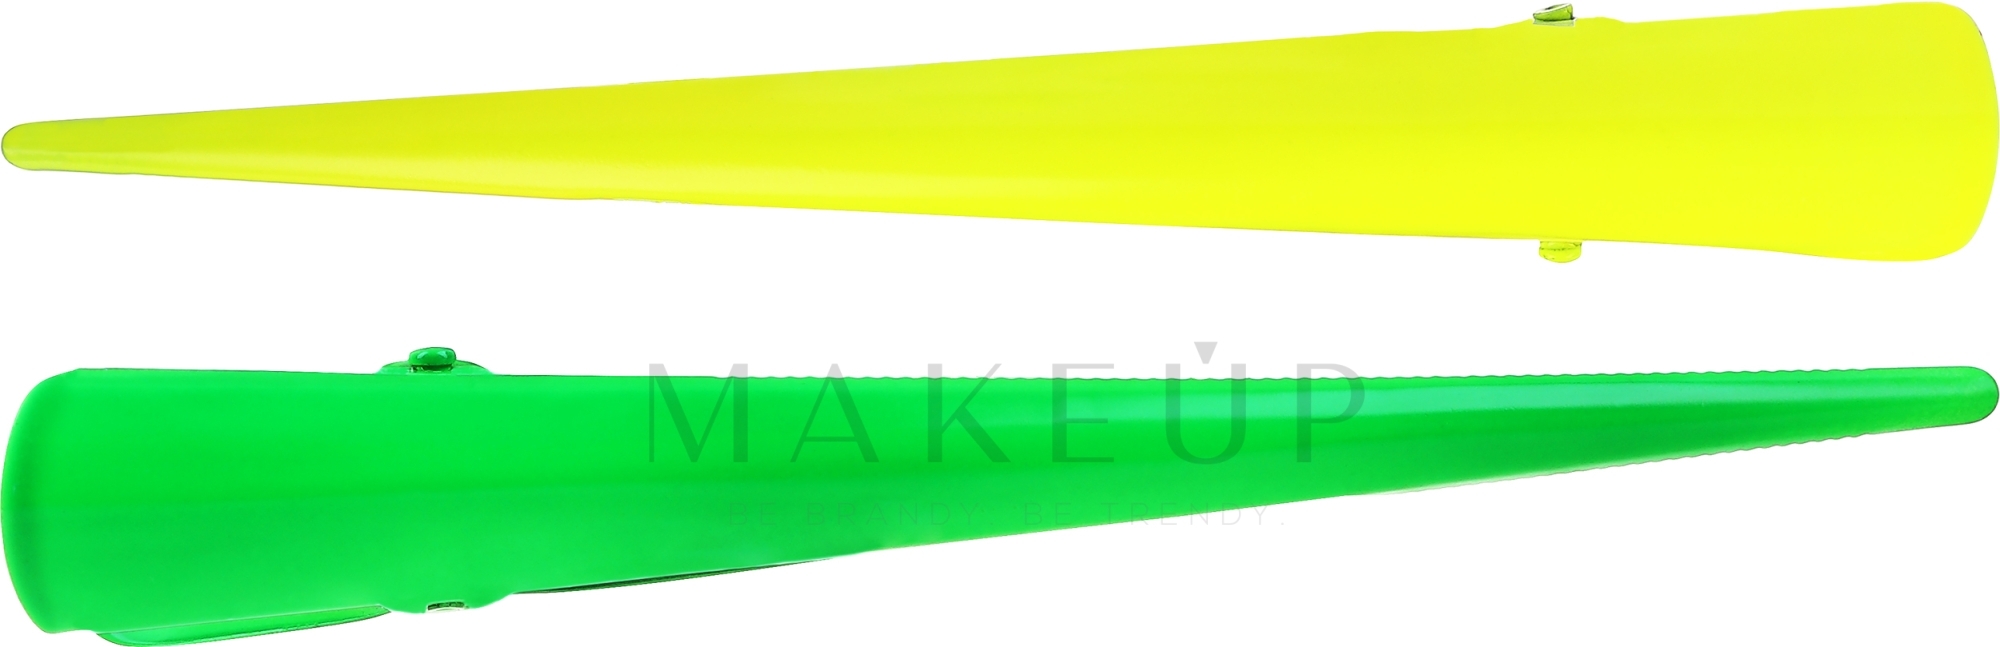 Haarspangen 25143 gelb, grün 2 St. - Top Choice — Bild 2 St.